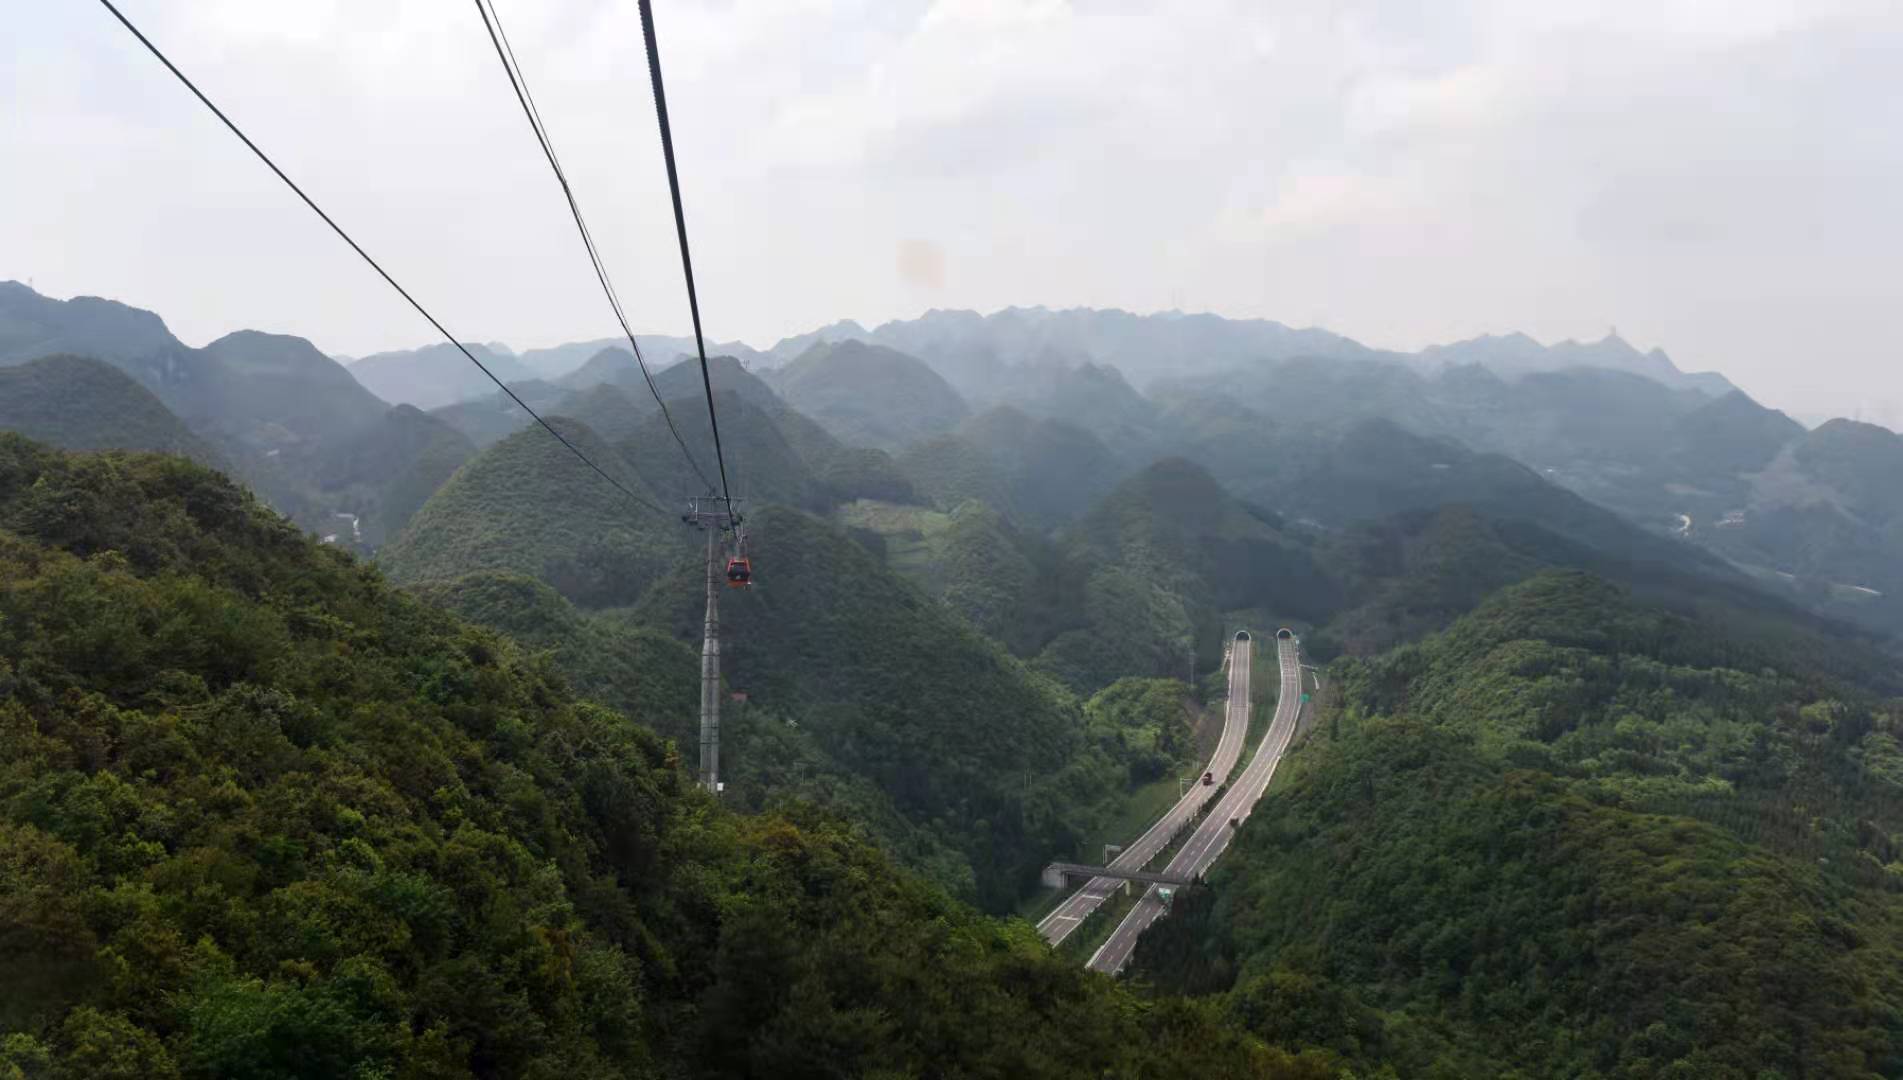 梅花山索道,被誉为"世界最长同路径山地索道".